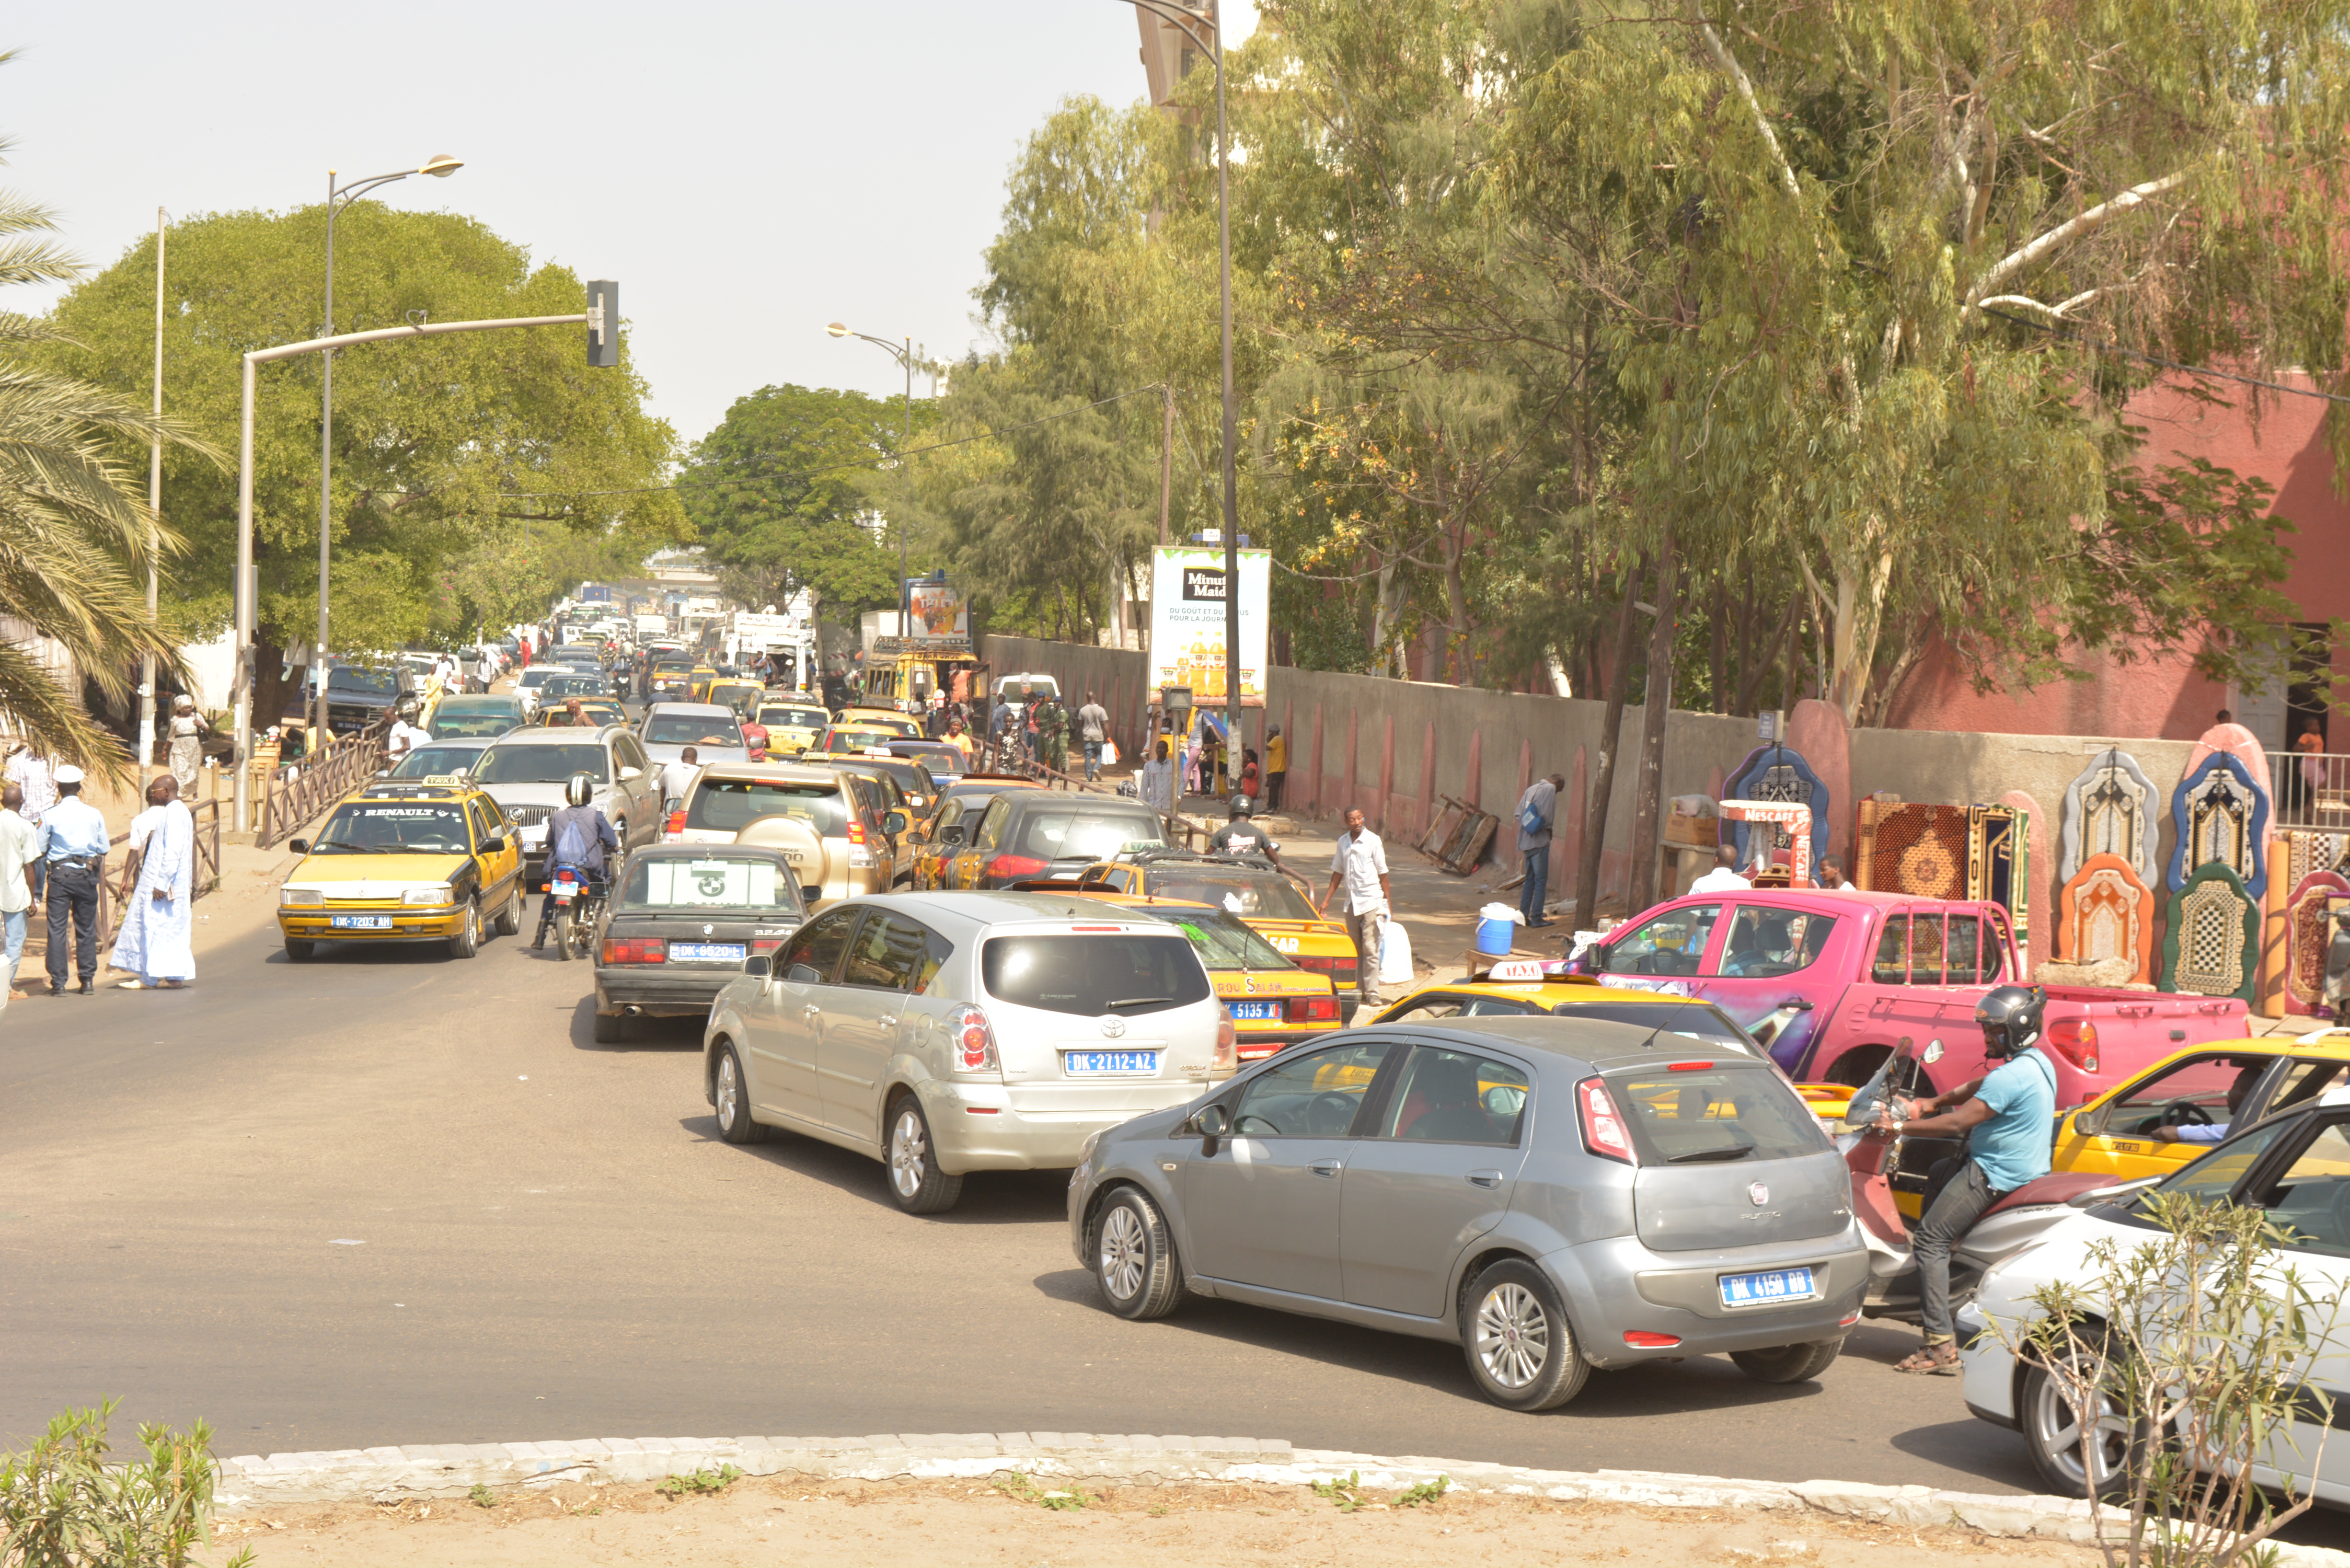 Appui du programme de politiques de transport en afrique (ssatp) pour une mobilité urbaine durable dans les villes senegalaises: Réformer la gouvernance de la mobilité urbaine pour fluidifier les déplacements